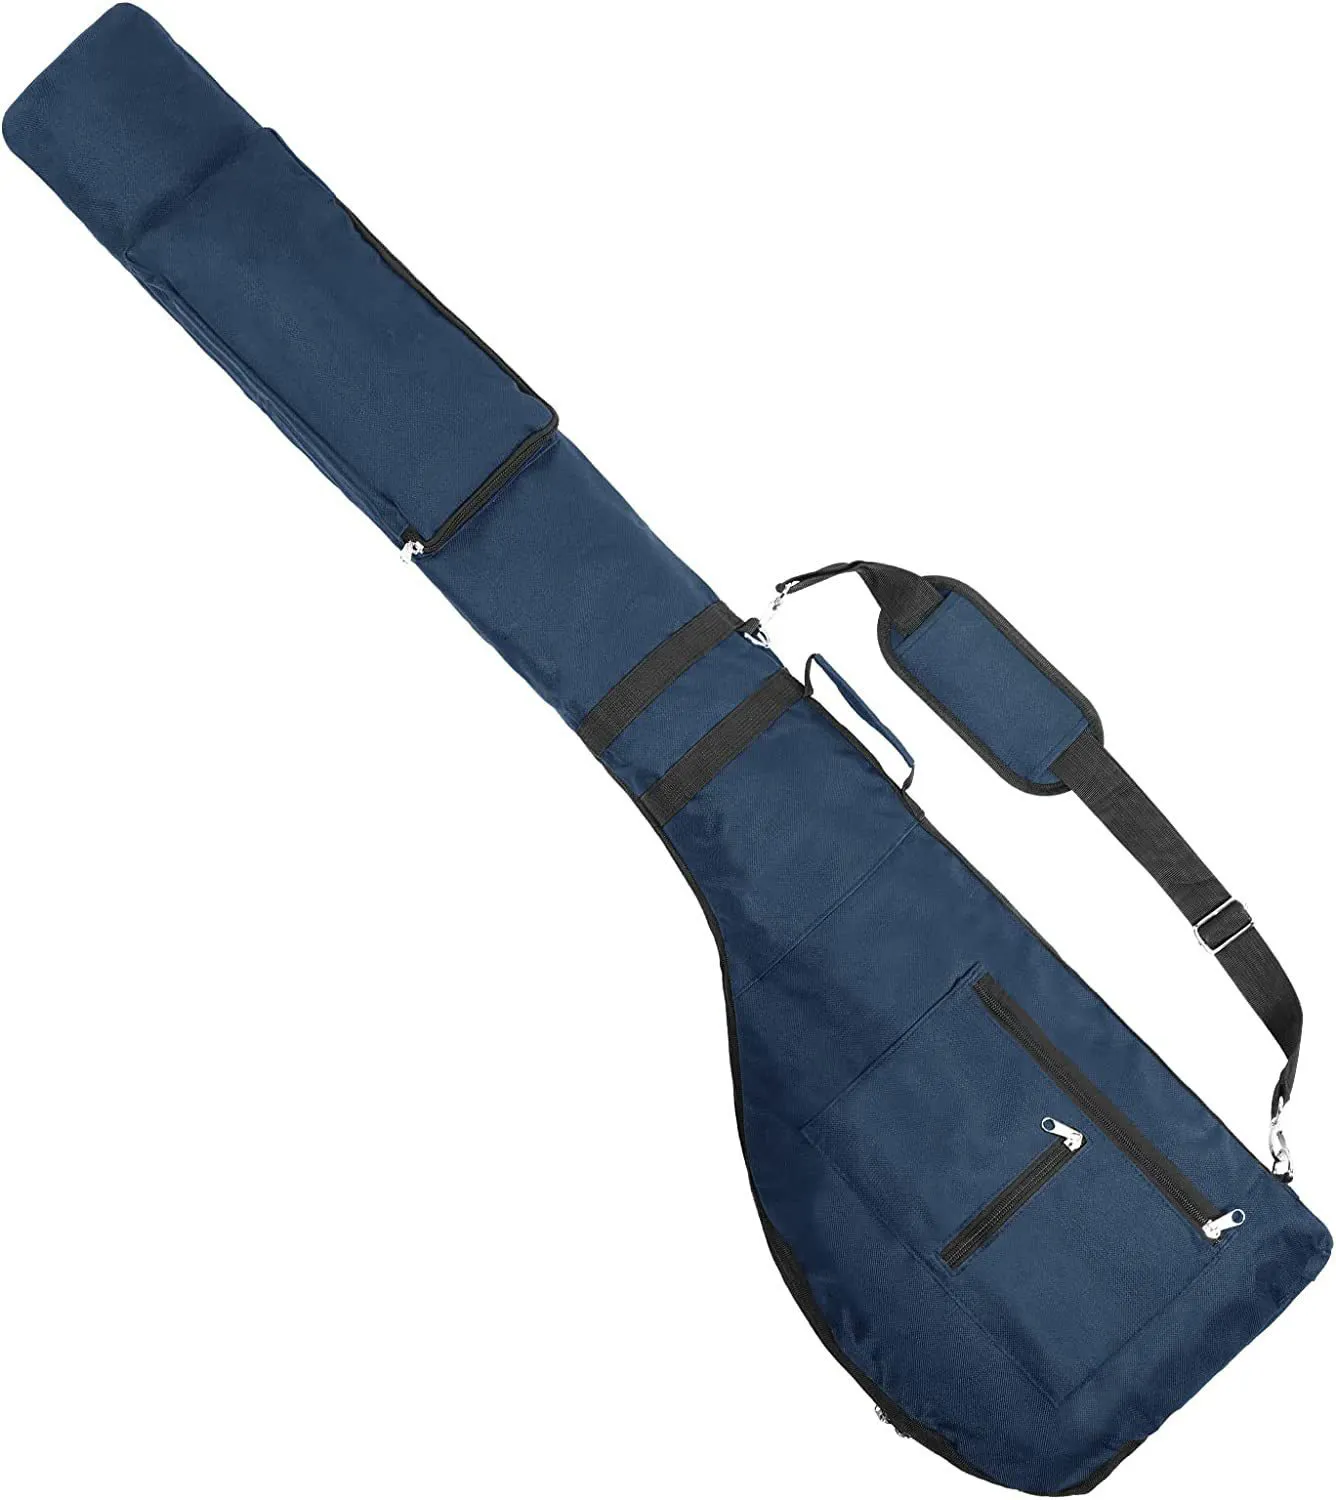 Özel katlanabilir Golf kulübü seyahat çantası 8-10 Golf kulüpleri için, kadınlar erkekler için su geçirmez Mini taşıma Golf çantaları